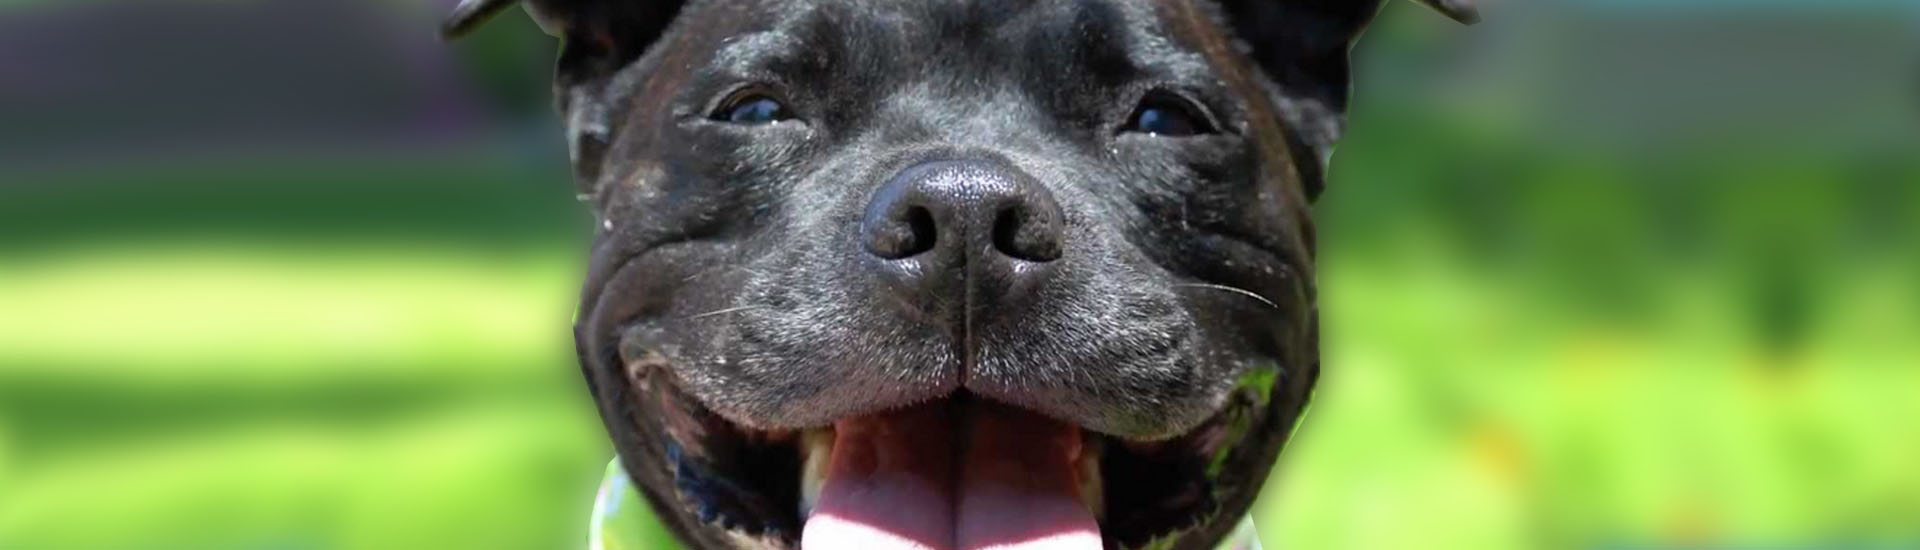 Staffordshire Bull Terrier: simpatia em forma de cão